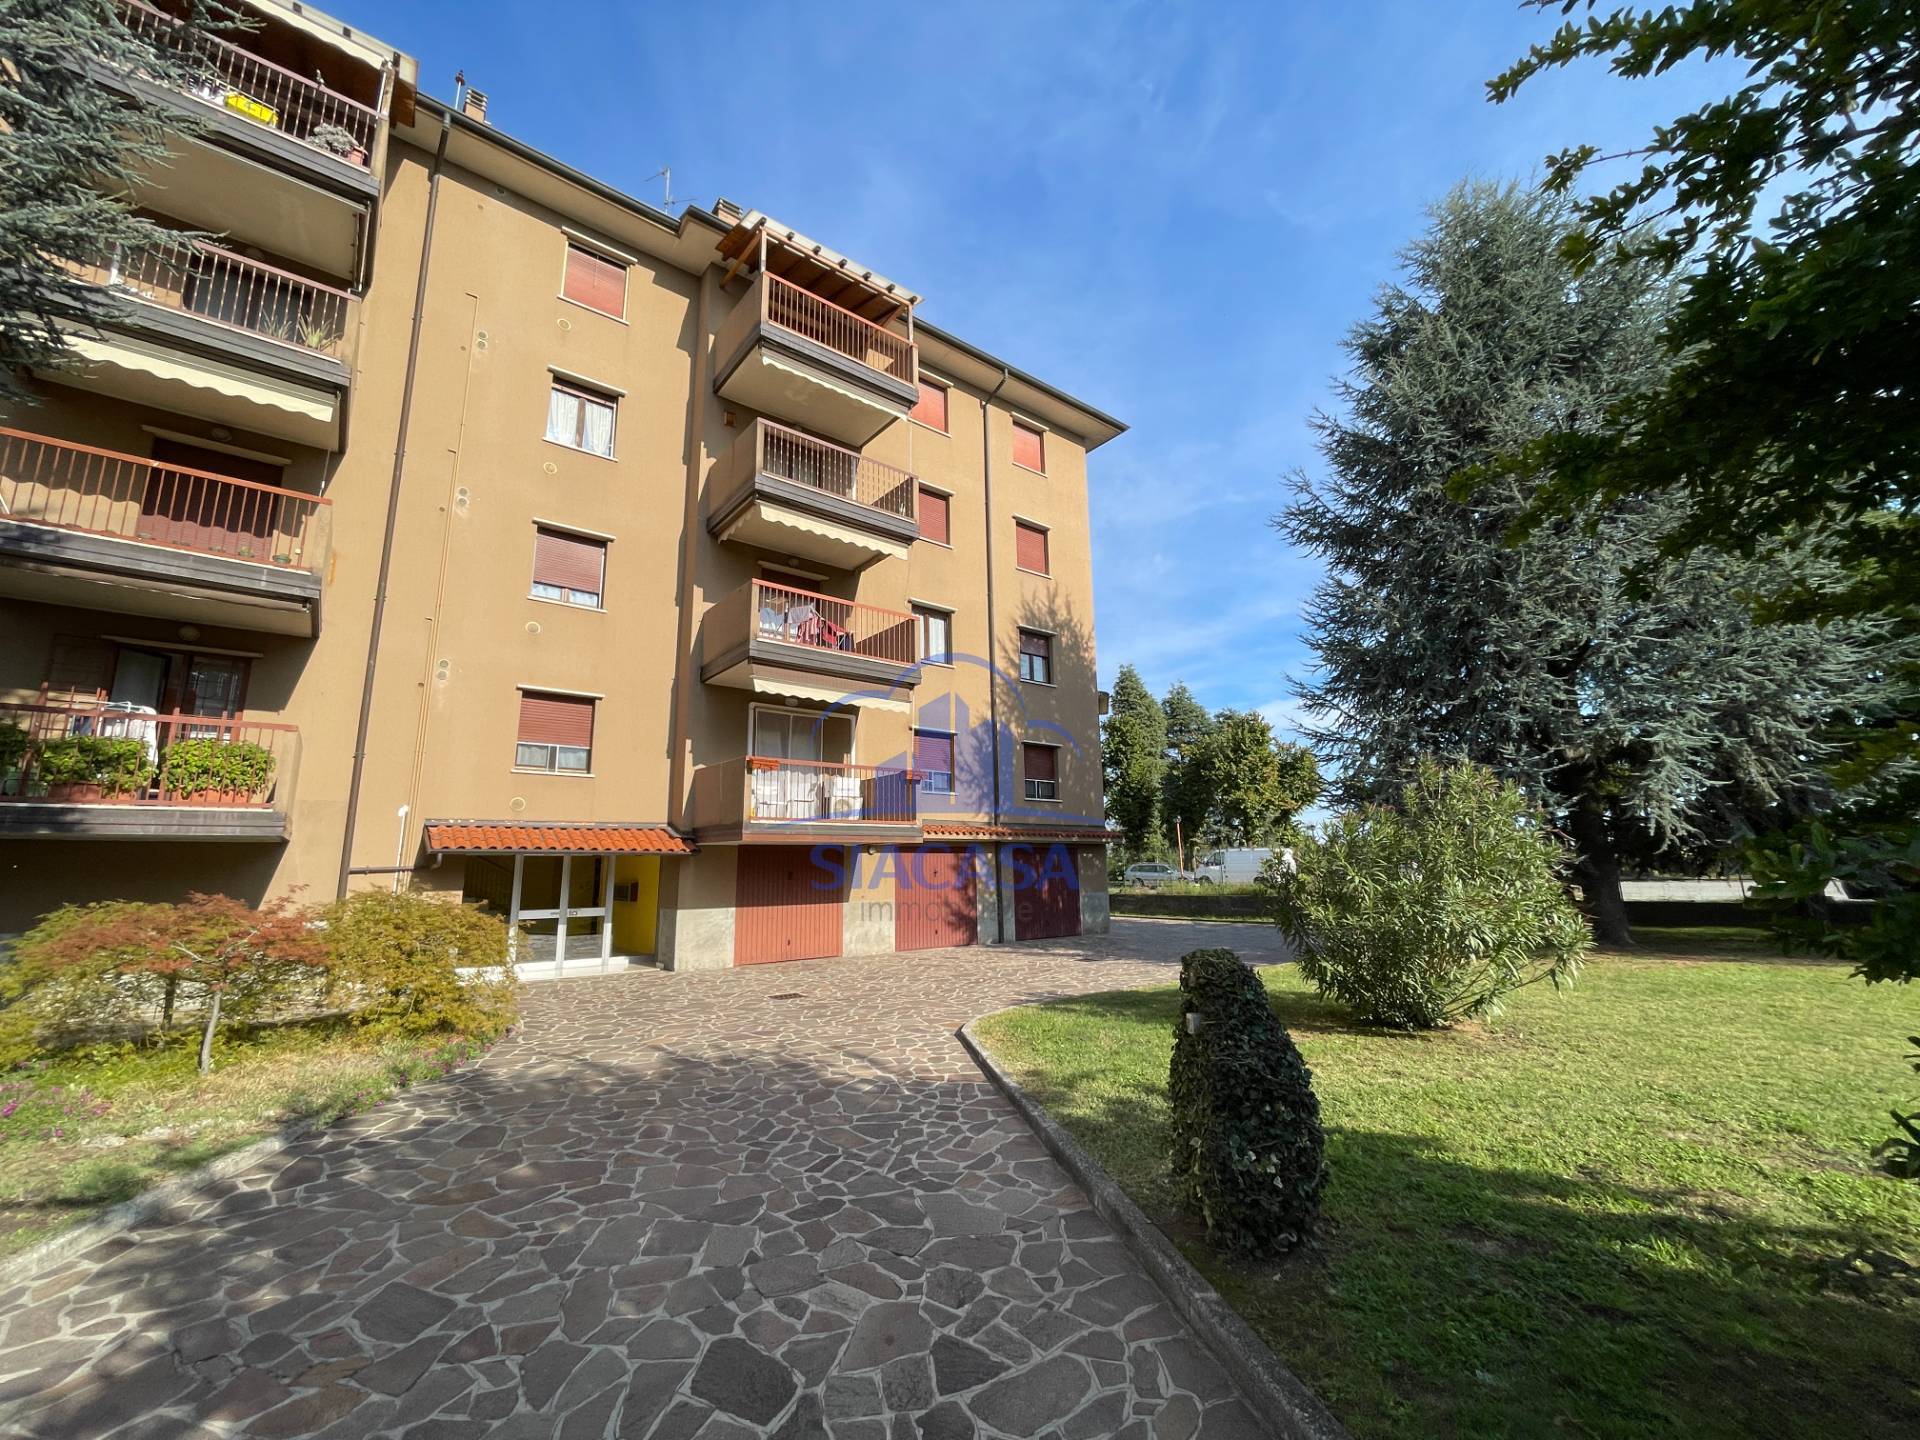 Appartamento in vendita a Cornate d'Adda, 4 locali, prezzo € 148.000 | PortaleAgenzieImmobiliari.it